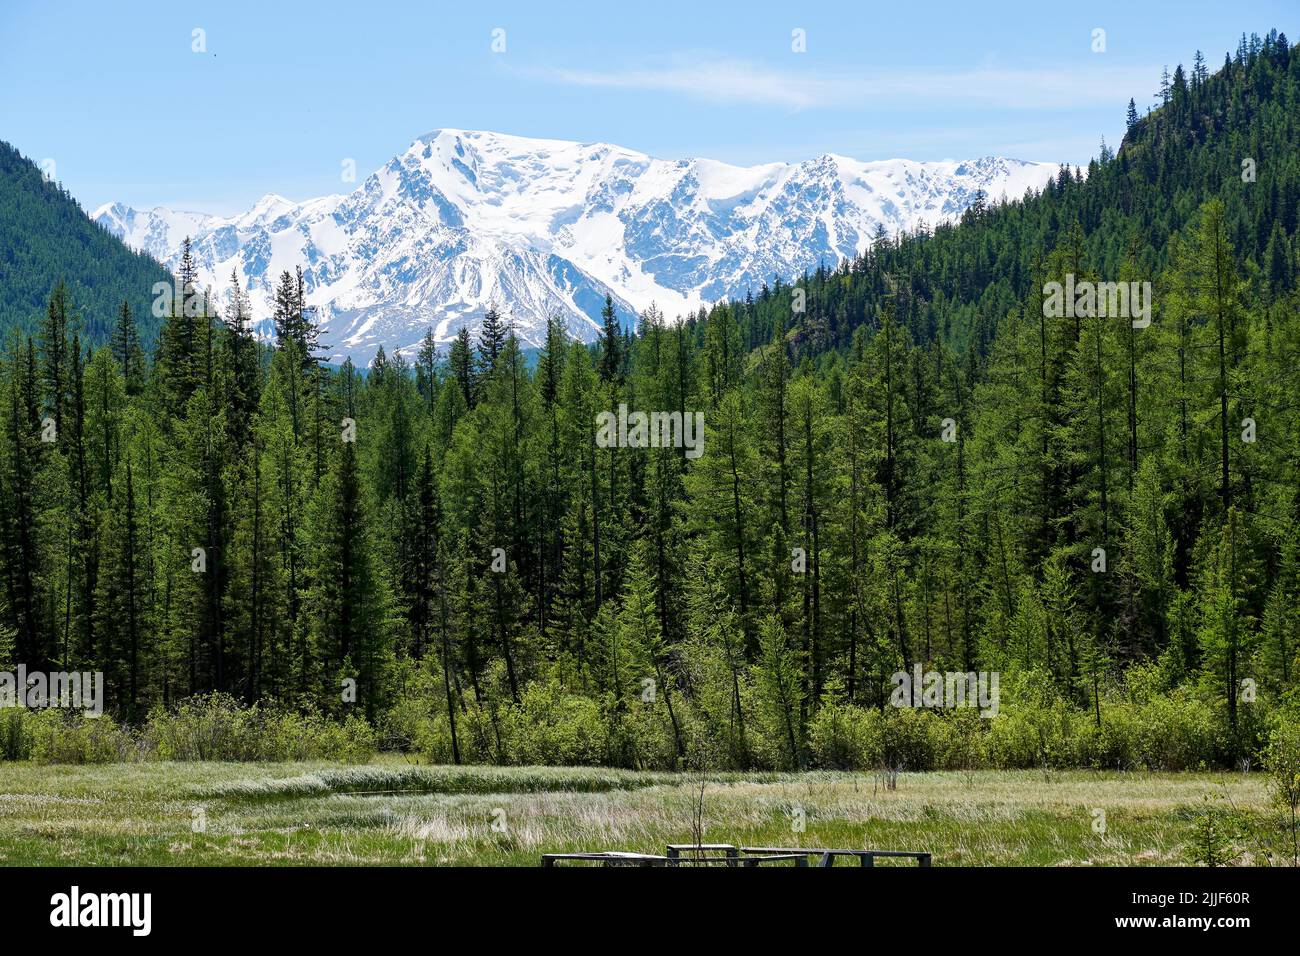 Forêt de montagne dense et pic de neige élevé en arrière-plan. Paysages et nature Banque D'Images